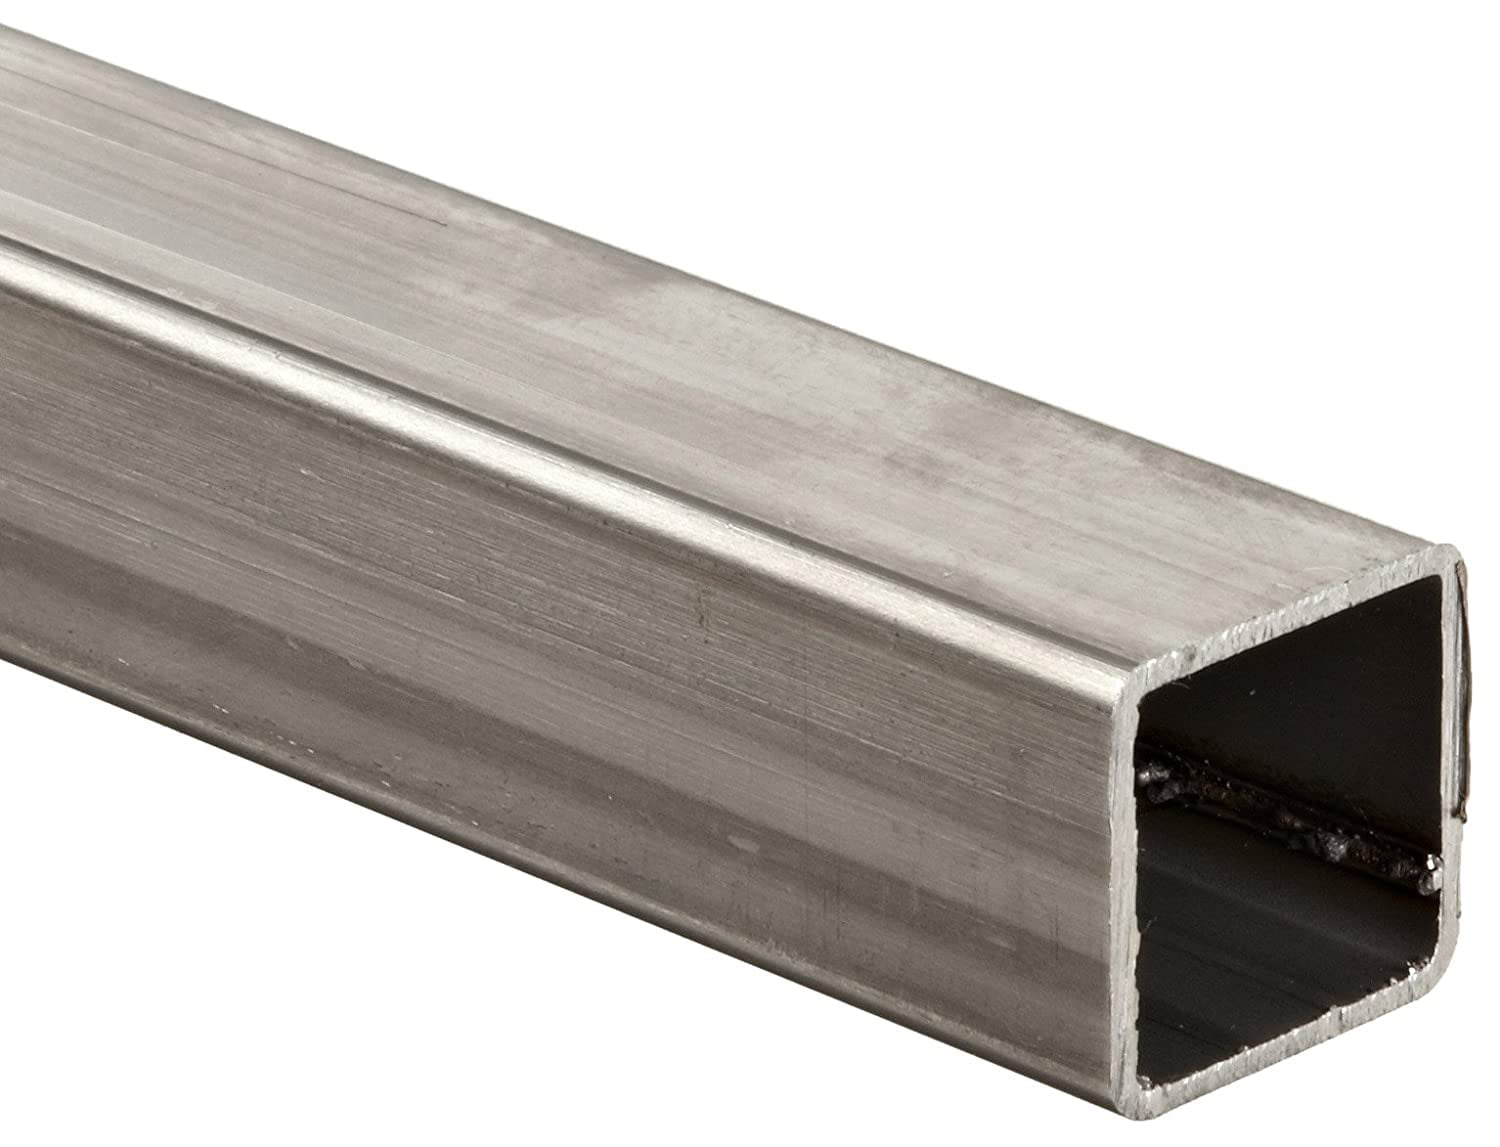 3/8 x 2 1/2 x 72 Grade A36 Hot Rolled Steel Flat Bar 